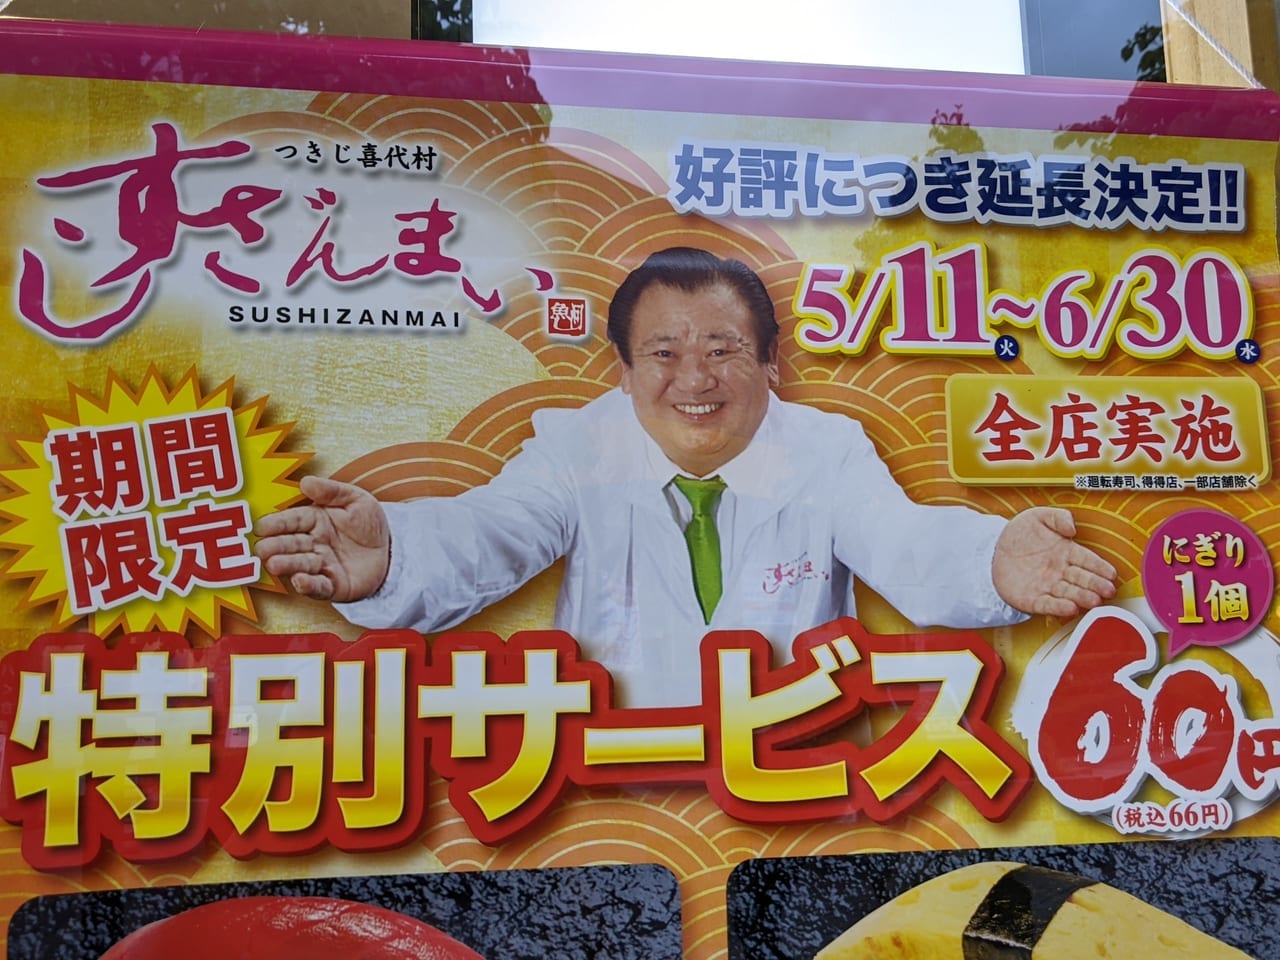 すしざんまい1個60円寿司のキャンペーンポスター